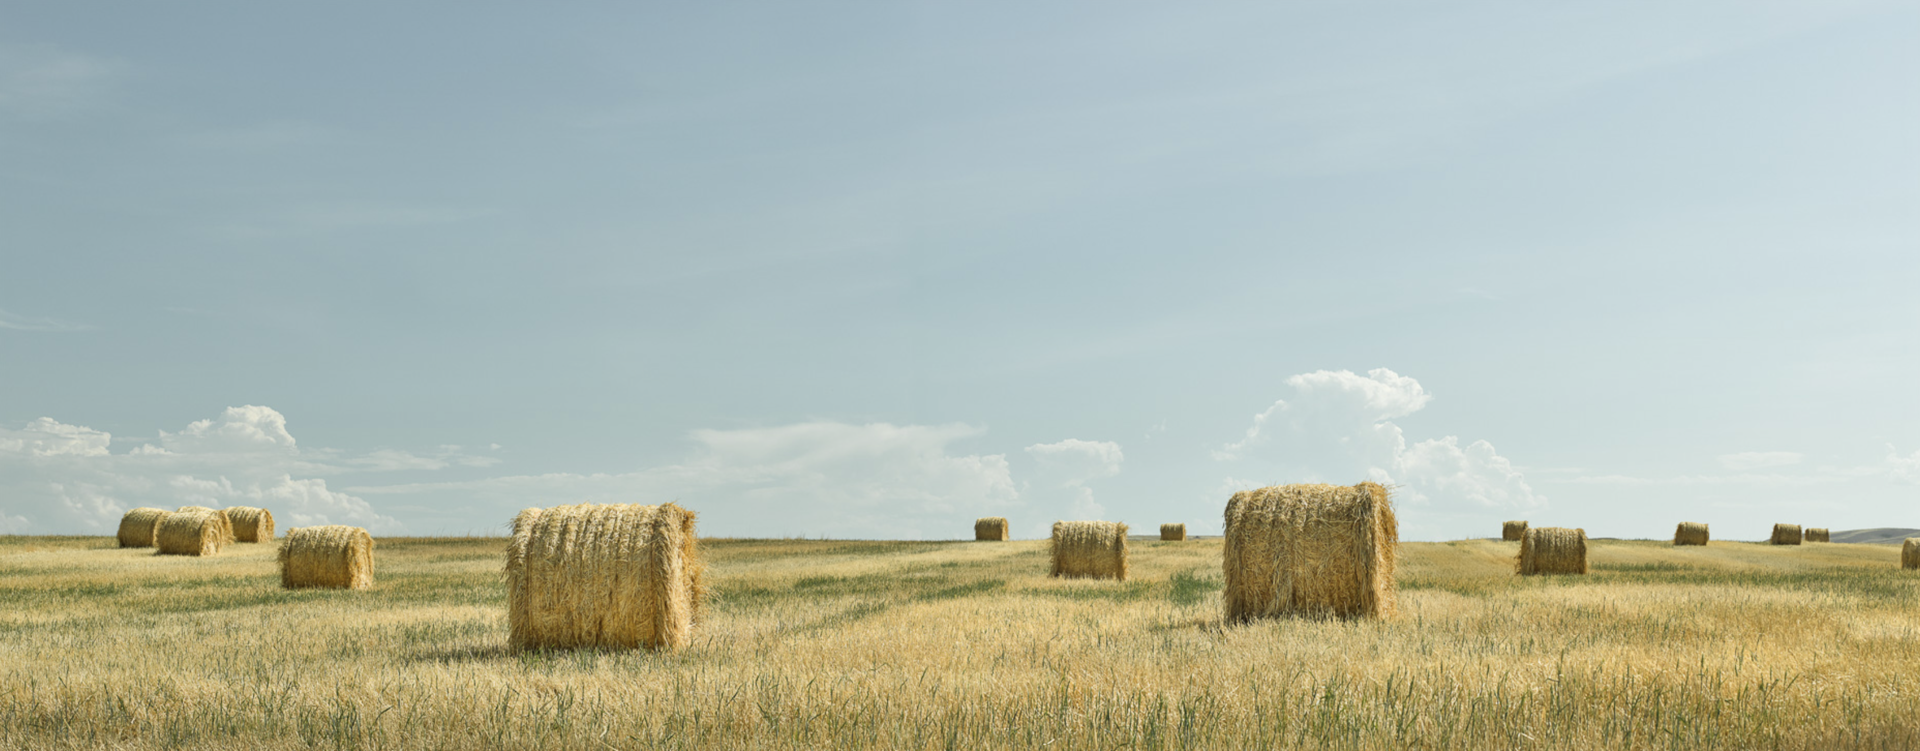 Hay Field 3 by Jim Westphalen